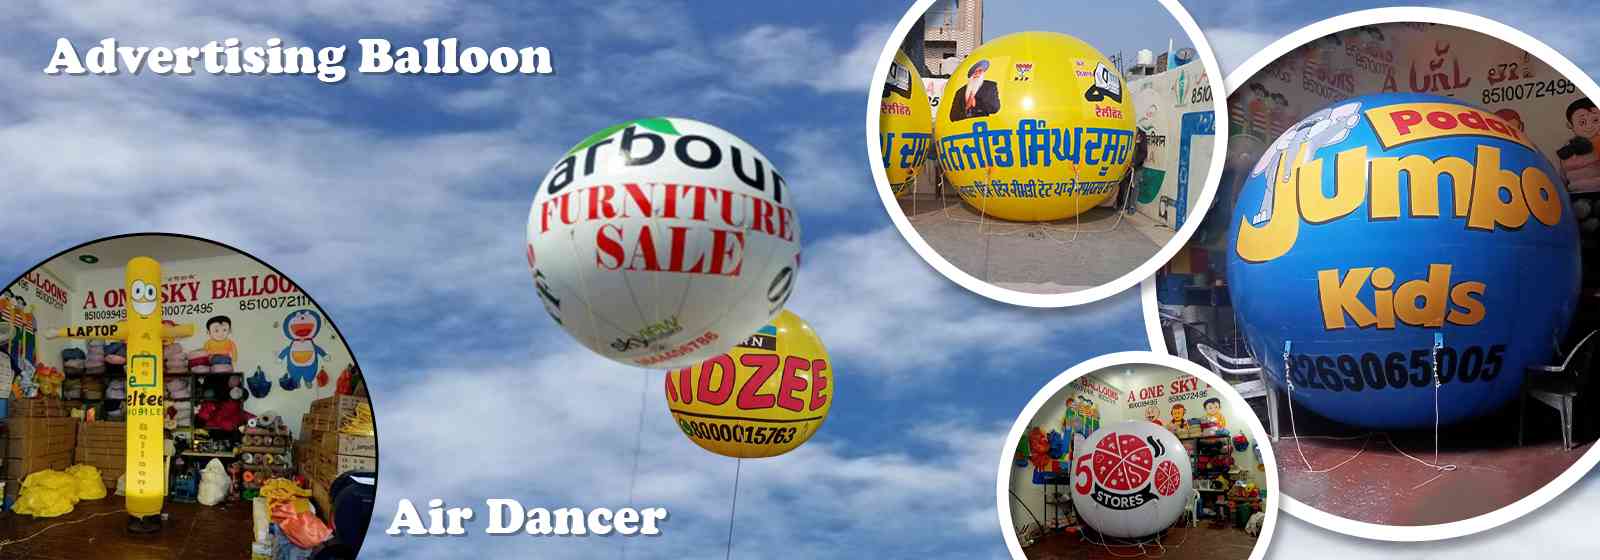 Advertising Balloons Manufacturer